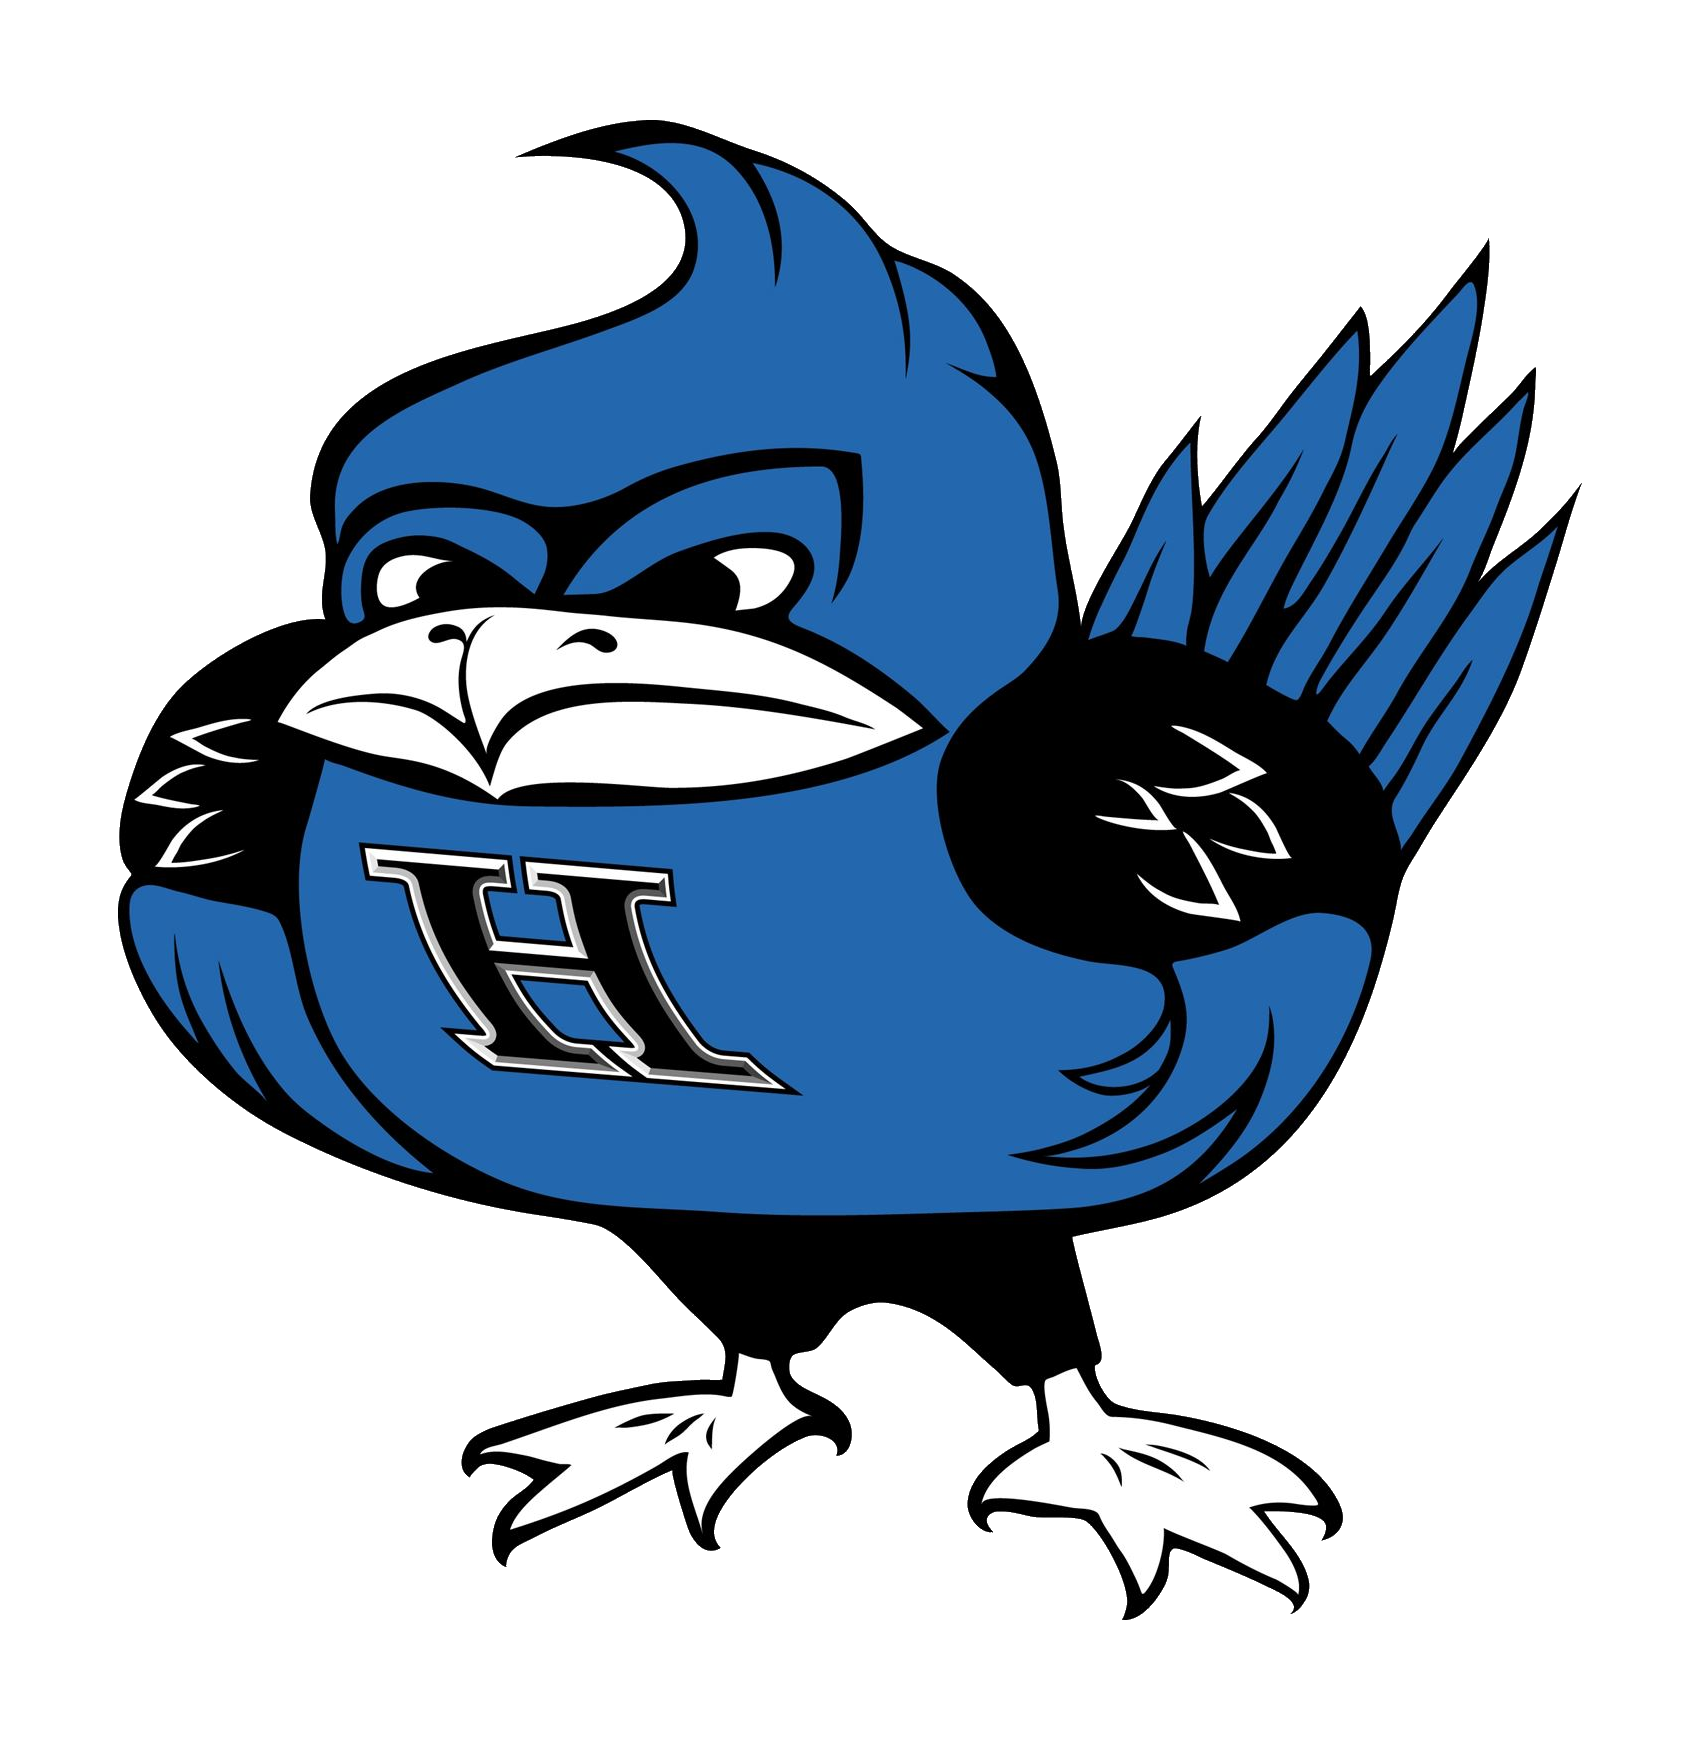 HHS bluebird logo